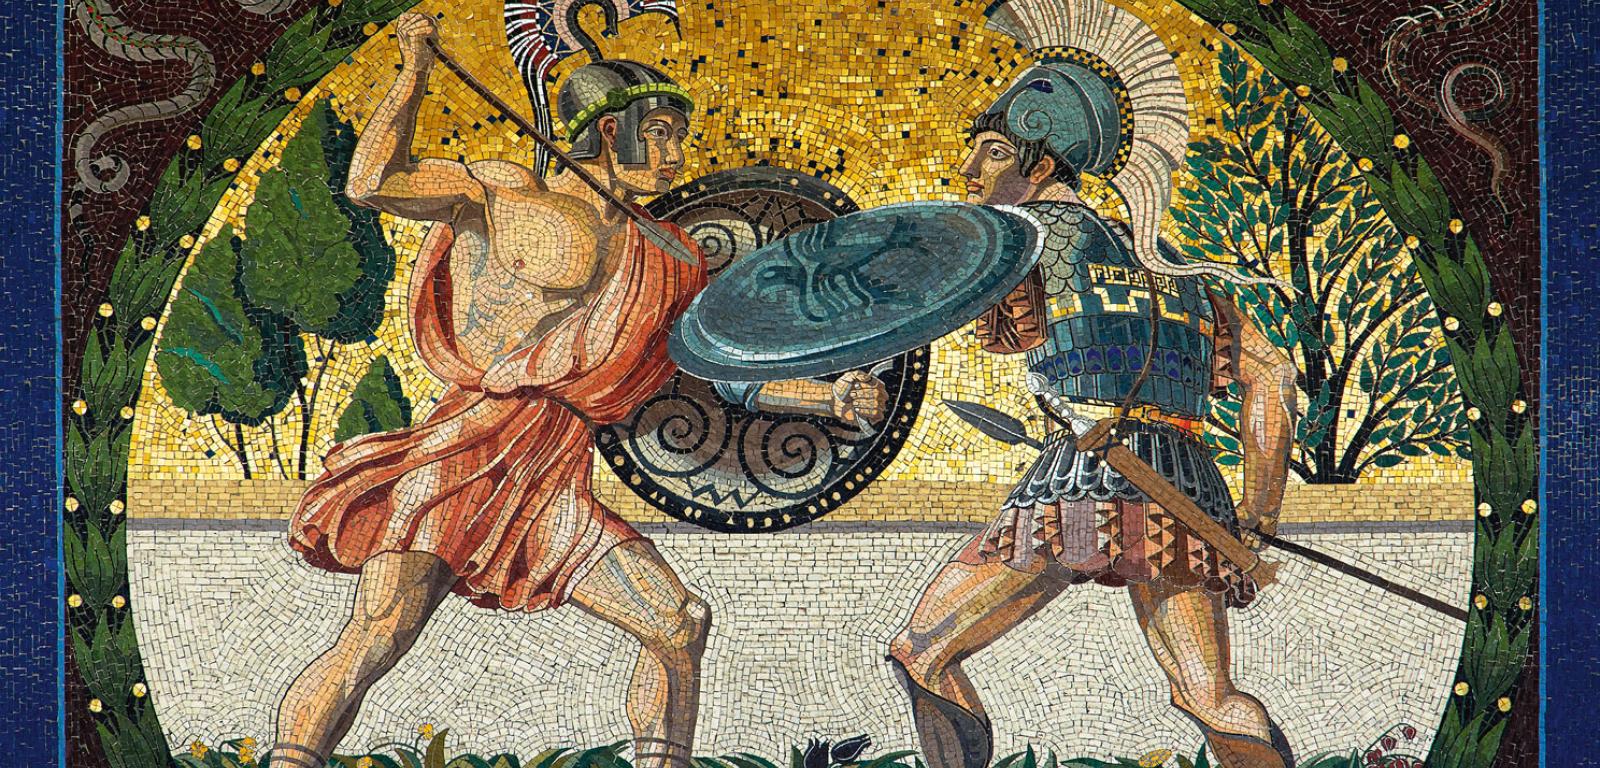 Mozaika przedstawiająca walkę dwóch antycznych wojowników (Monachium).